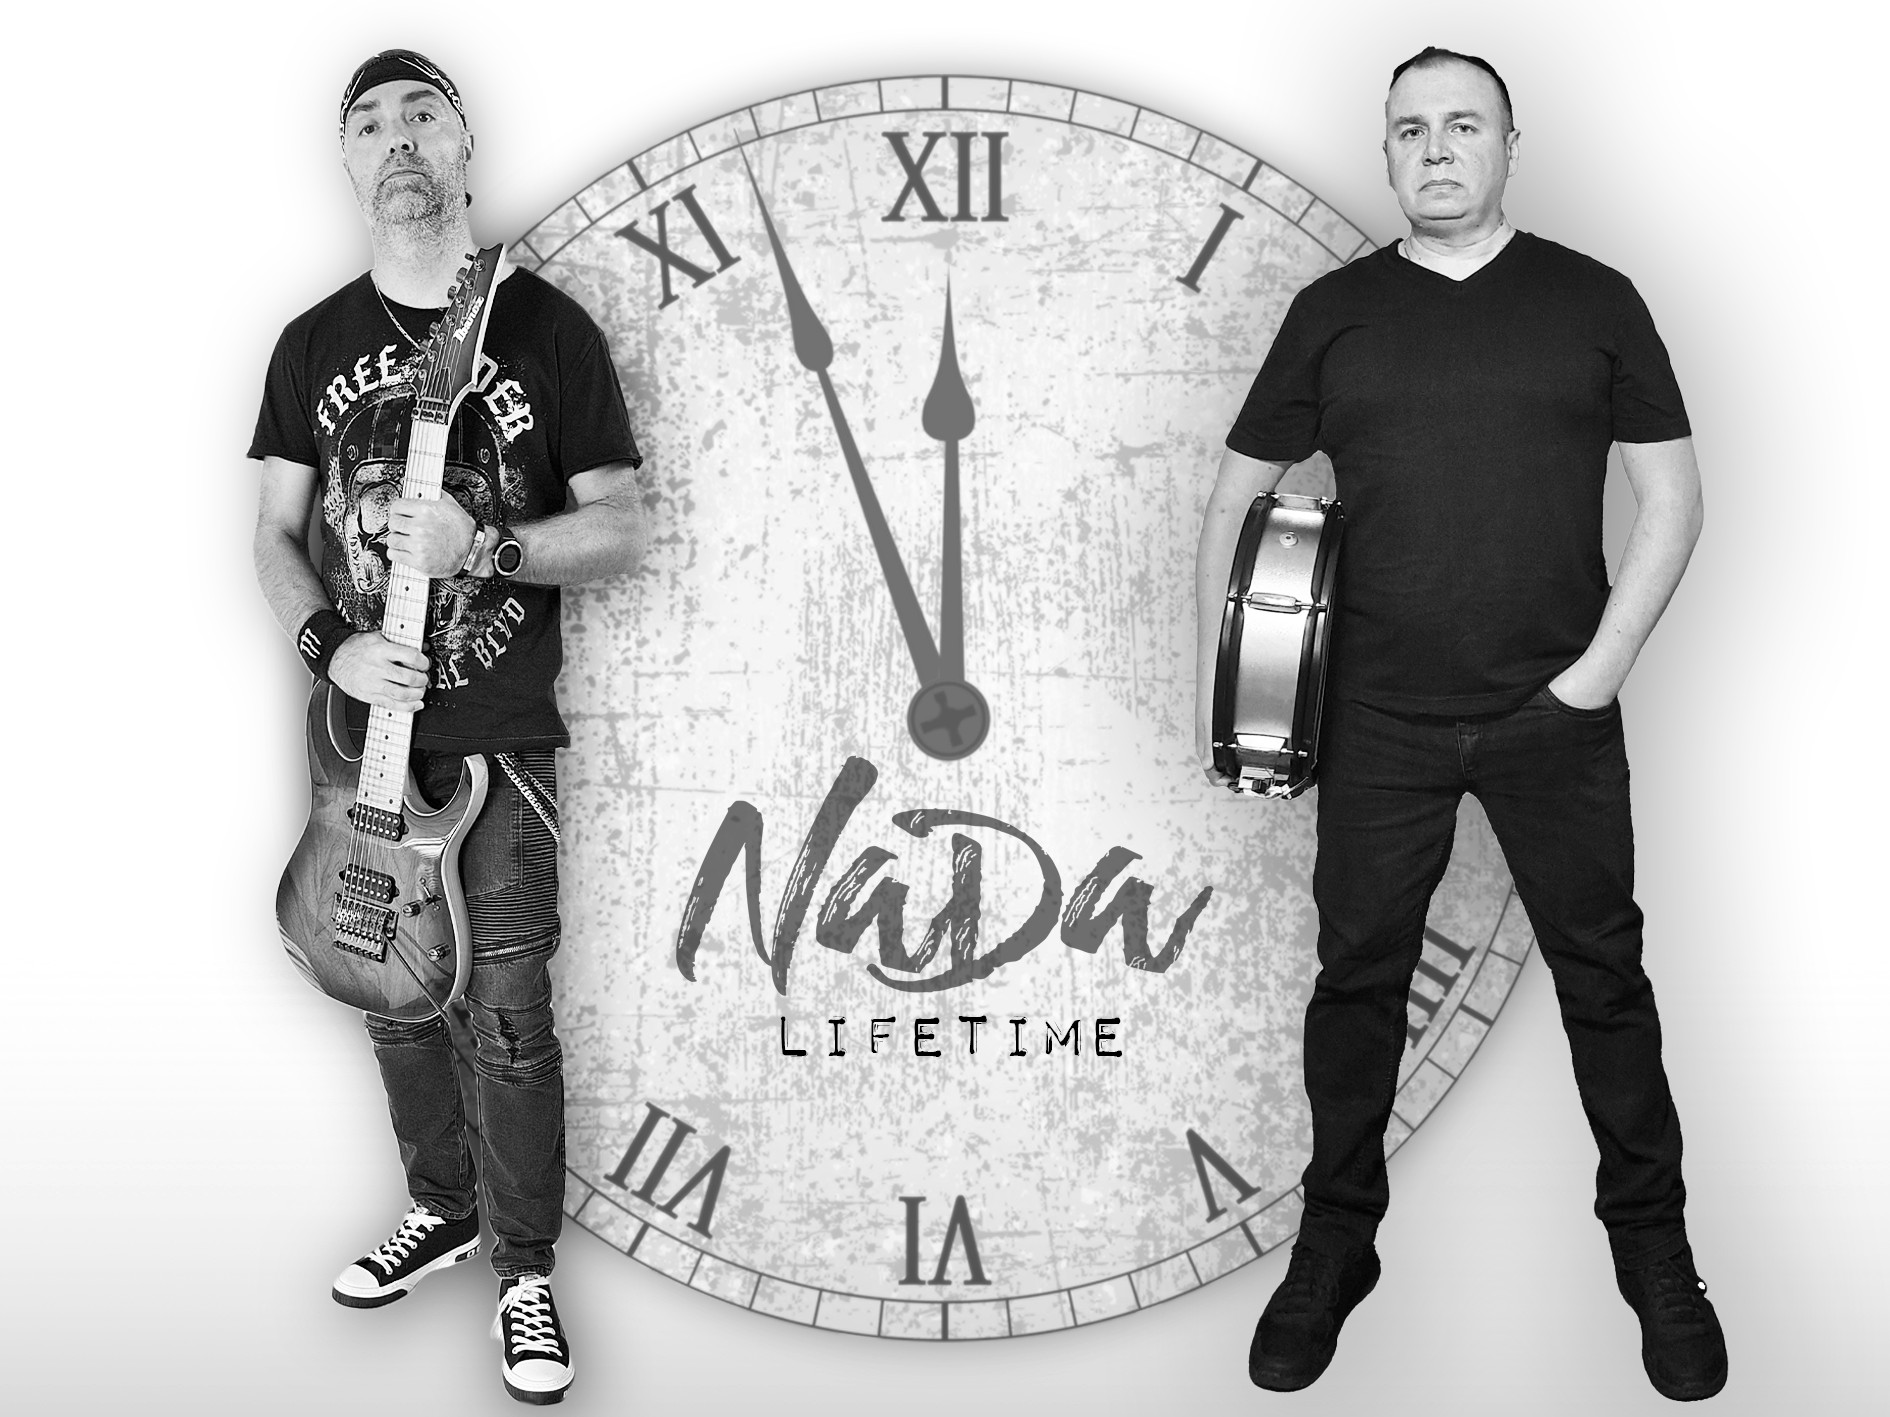 NaDa - Új instrumentális dallal jelentkezett Dán Attila és Nagy Zsolt formációja: 'Lifetime''